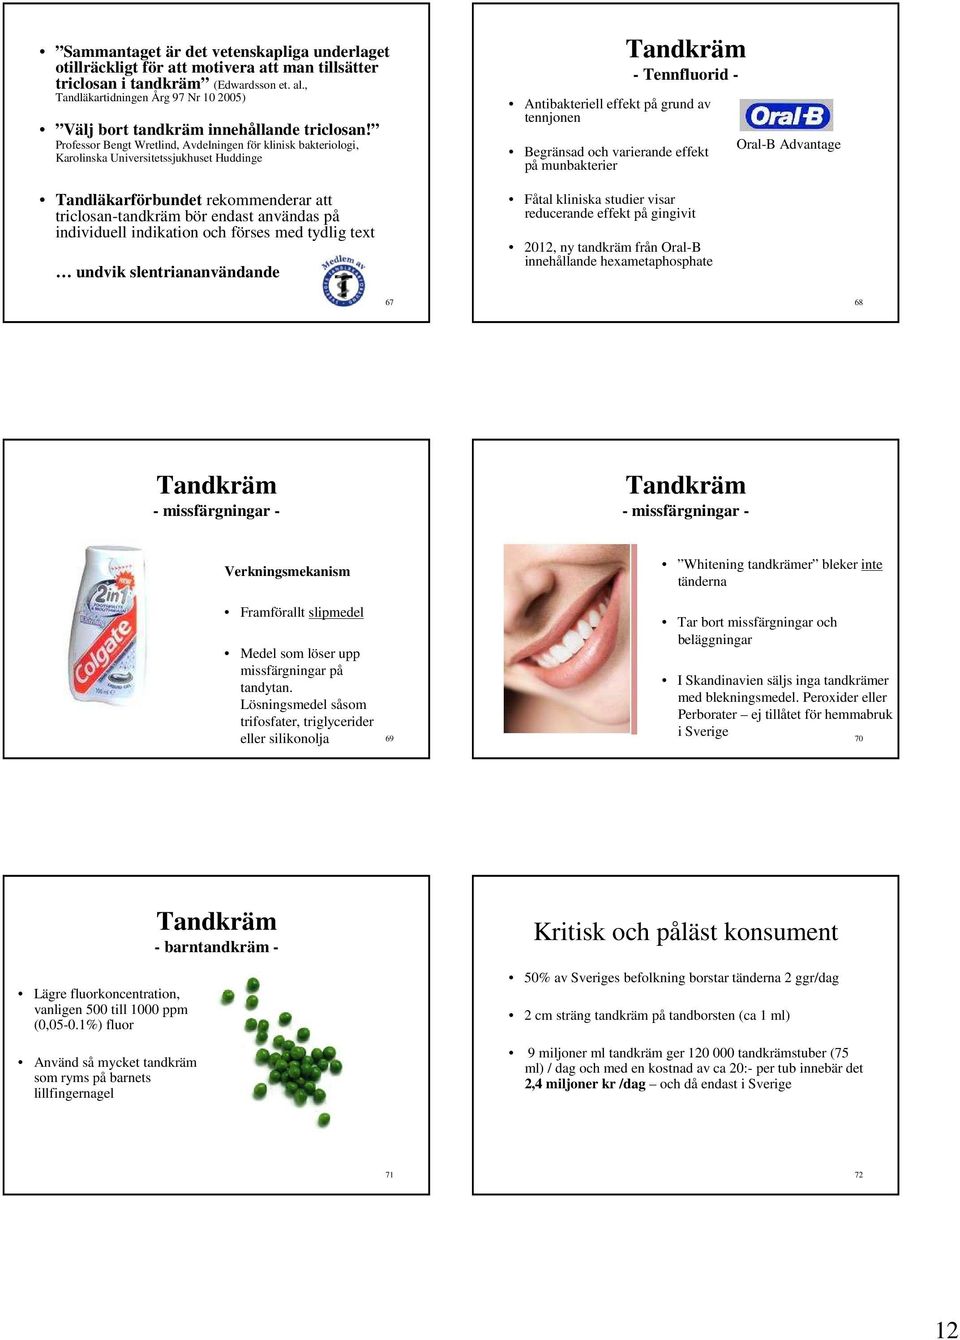 Professor Bengt Wretlind, Avdelningen för klinisk bakteriologi, Karolinska Universitetssjukhuset Huddinge Tandläkarförbundet rekommenderar att triclosan-tandkräm bör endast användas på individuell